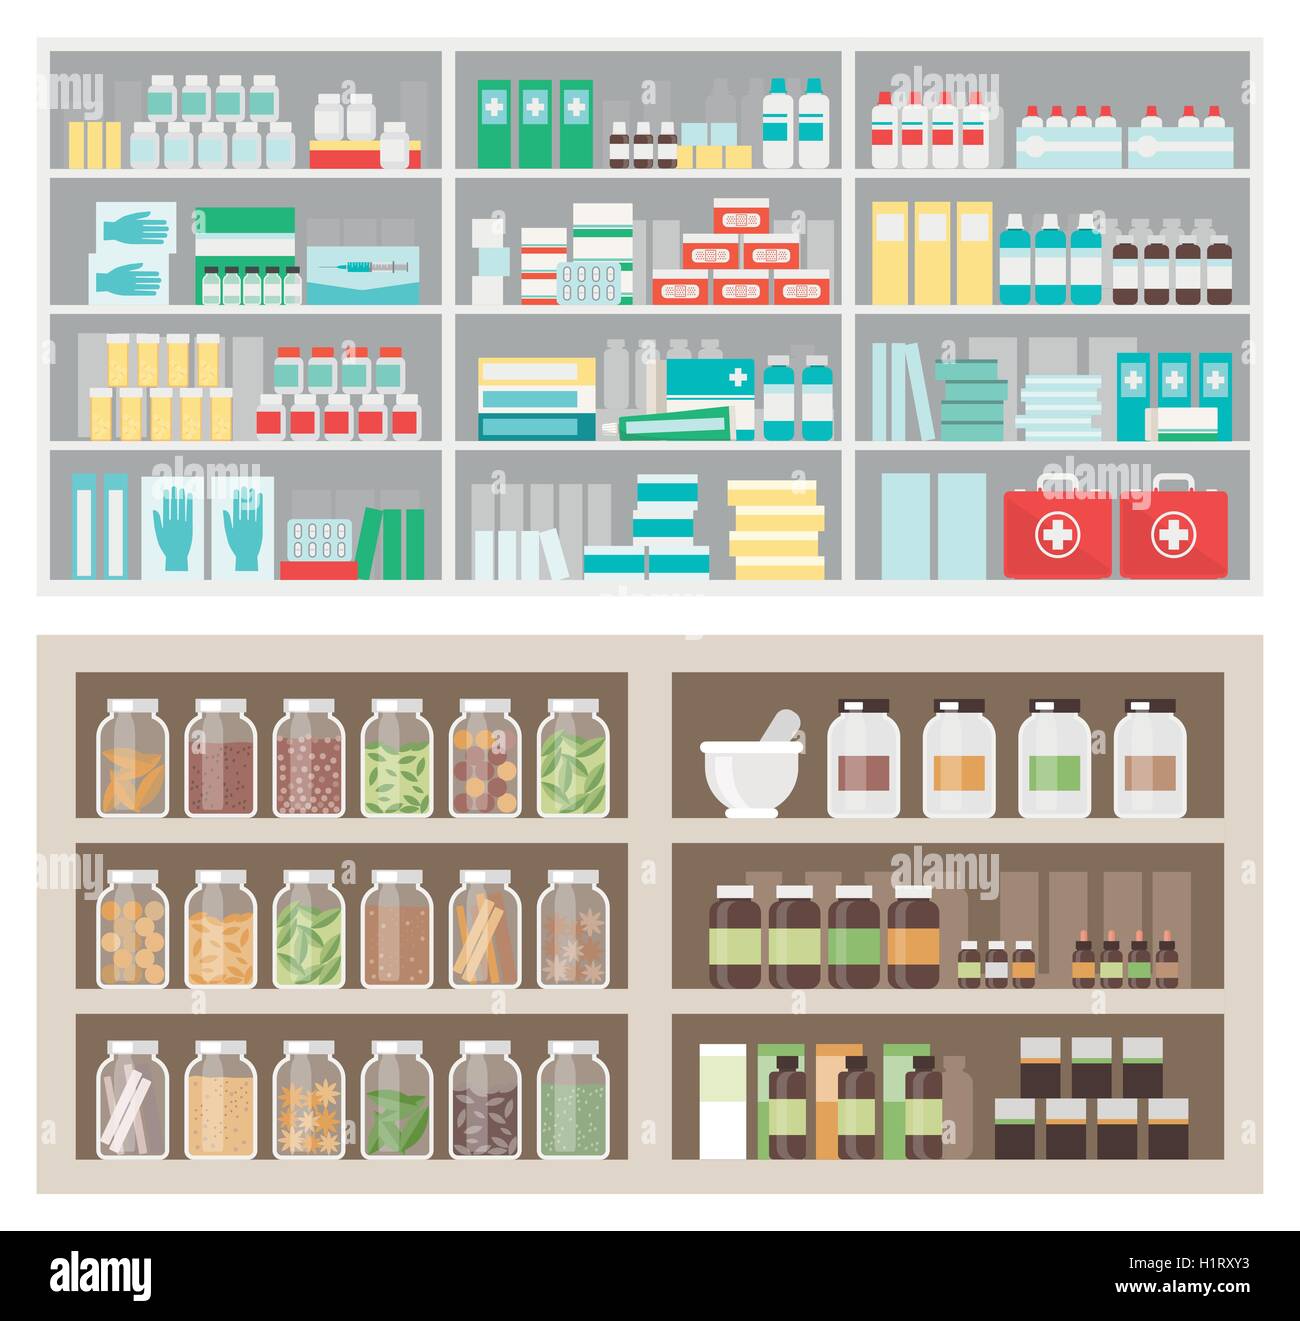 Apotheke und Herbalist von Regalen und Display mit Produkte, Medikamente, natürliche Heilmittel, Gläser Flaschen und Kisten Stock Vektor